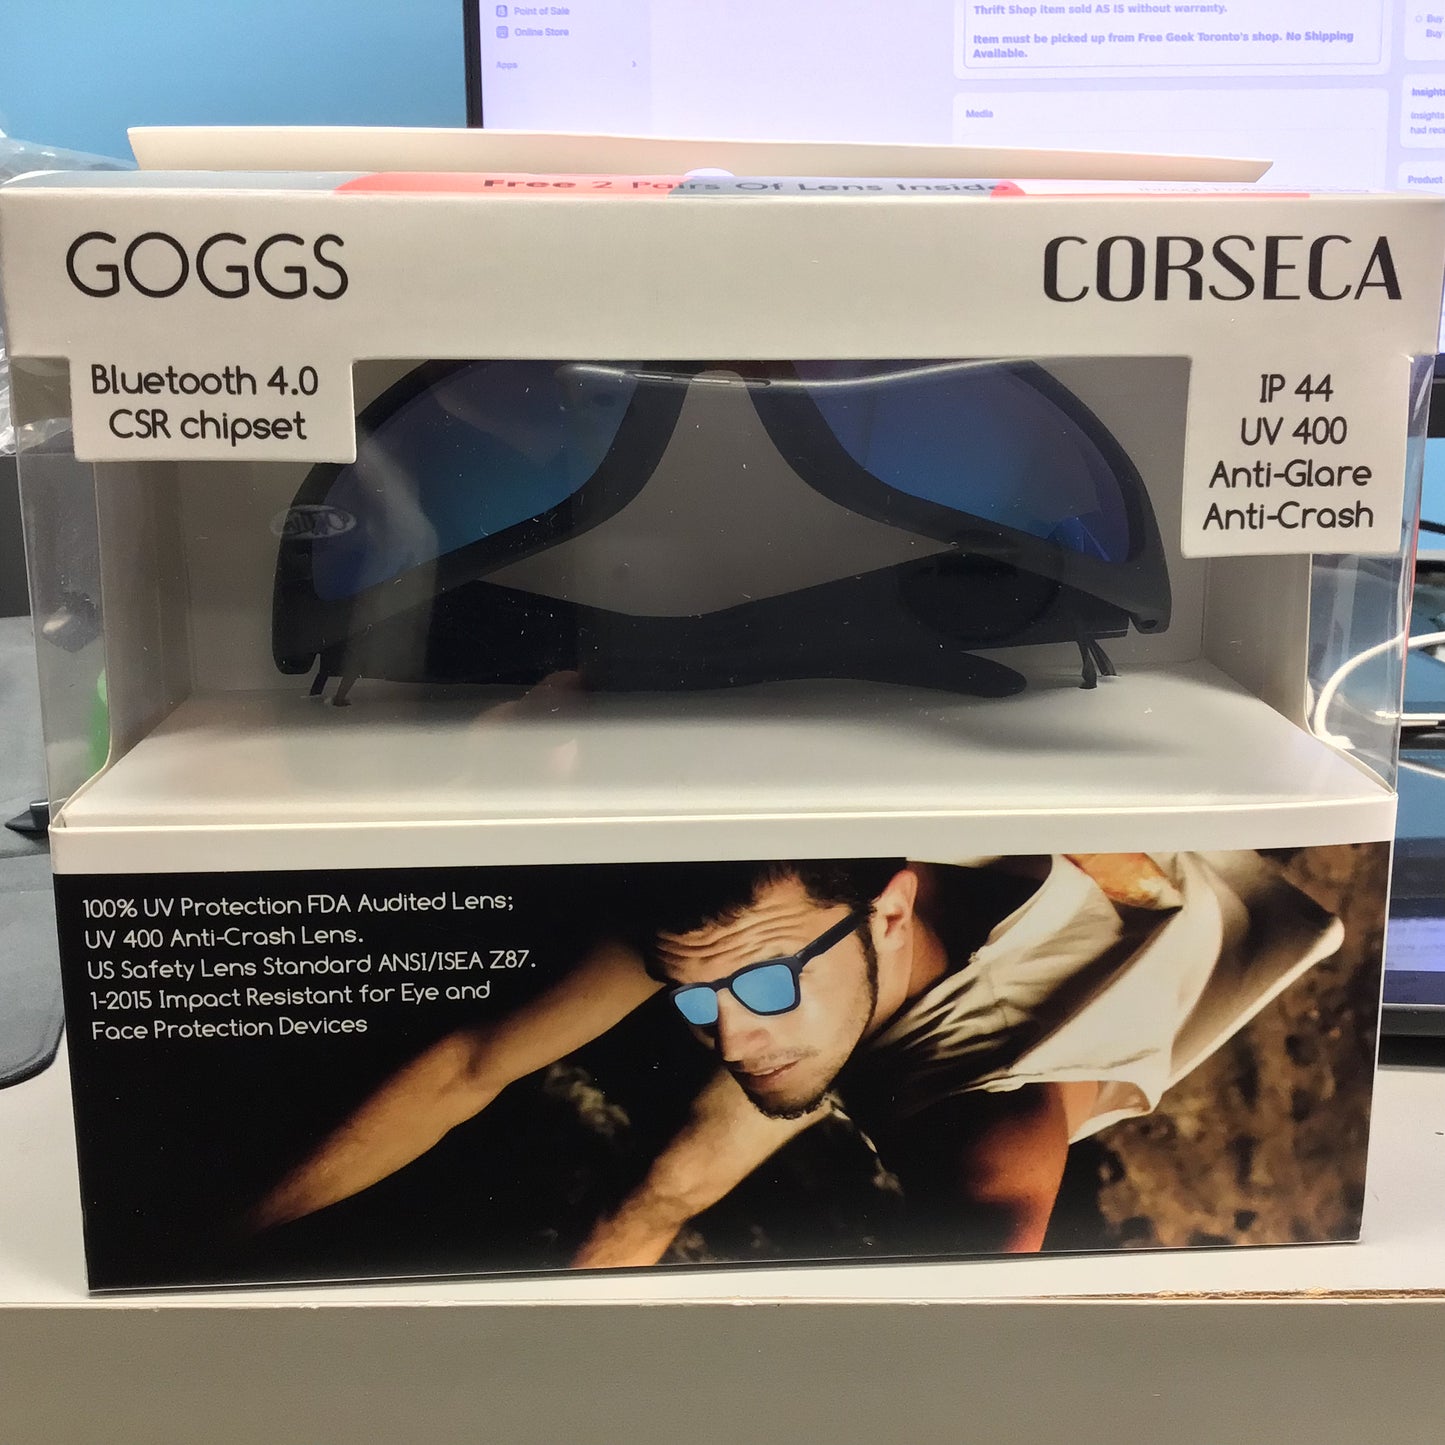 Corseca Goggs Bluetooth Sunglasses